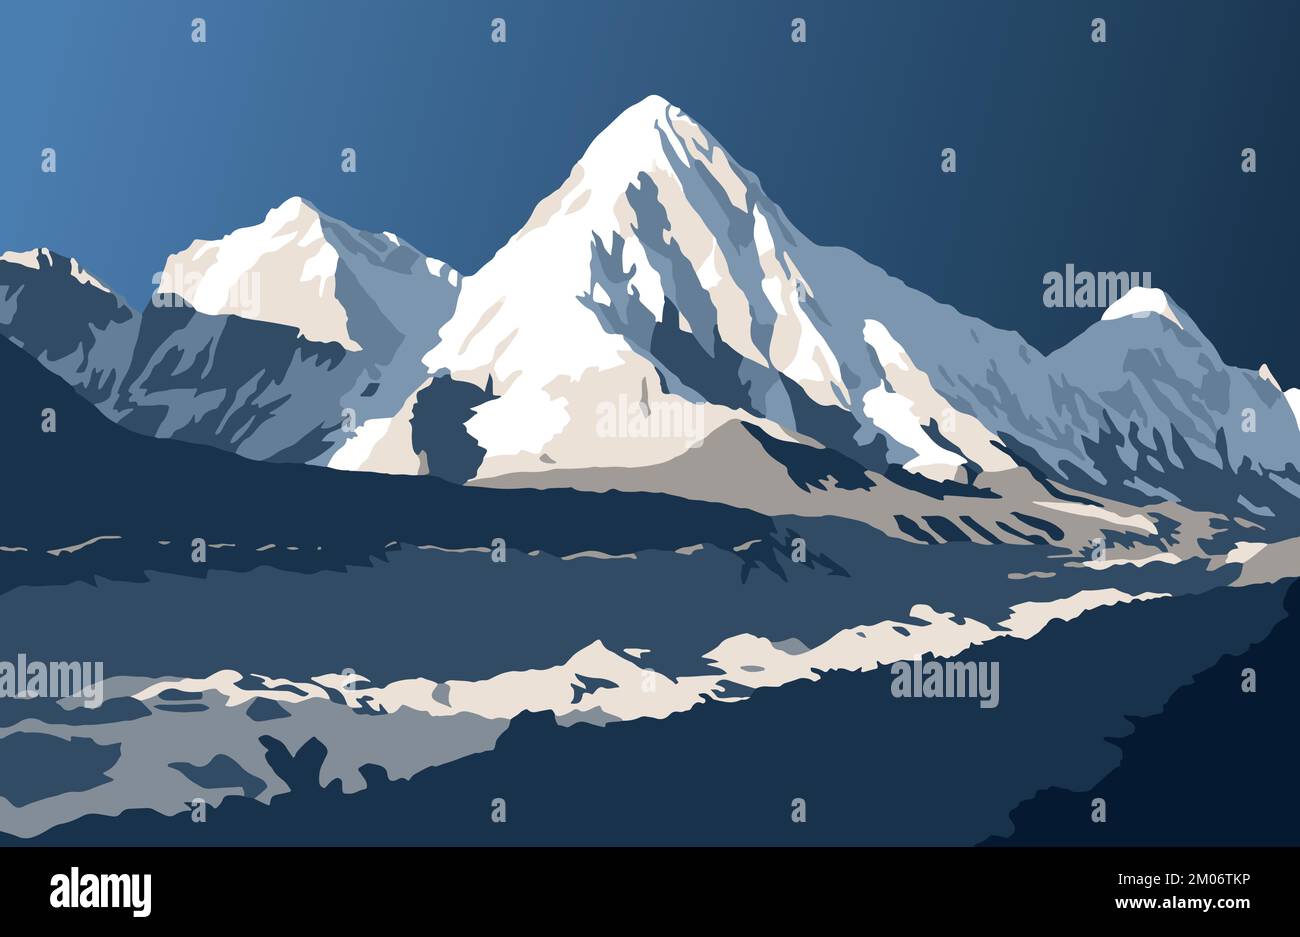 Glacier de Khumbu et Mont Pumori, illustration vectorielle, vallée de Khumbu, parc national de Sagarmatha, montagne du Népal Himalaya Illustration de Vecteur